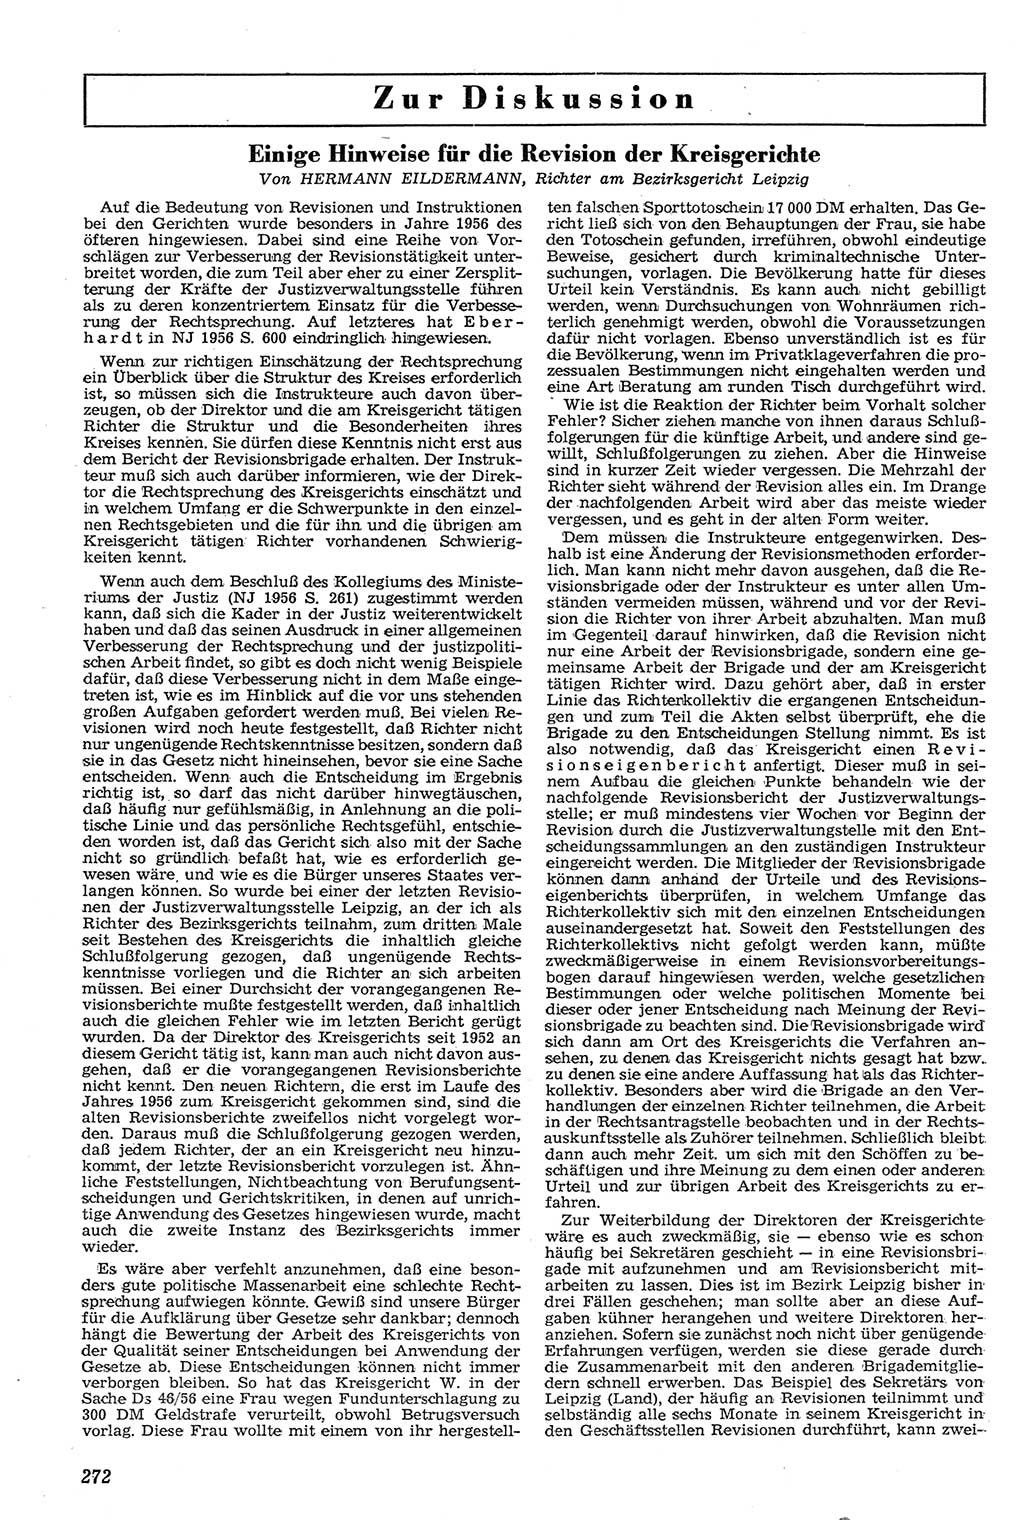 Neue Justiz (NJ), Zeitschrift für Recht und Rechtswissenschaft [Deutsche Demokratische Republik (DDR)], 11. Jahrgang 1957, Seite 272 (NJ DDR 1957, S. 272)